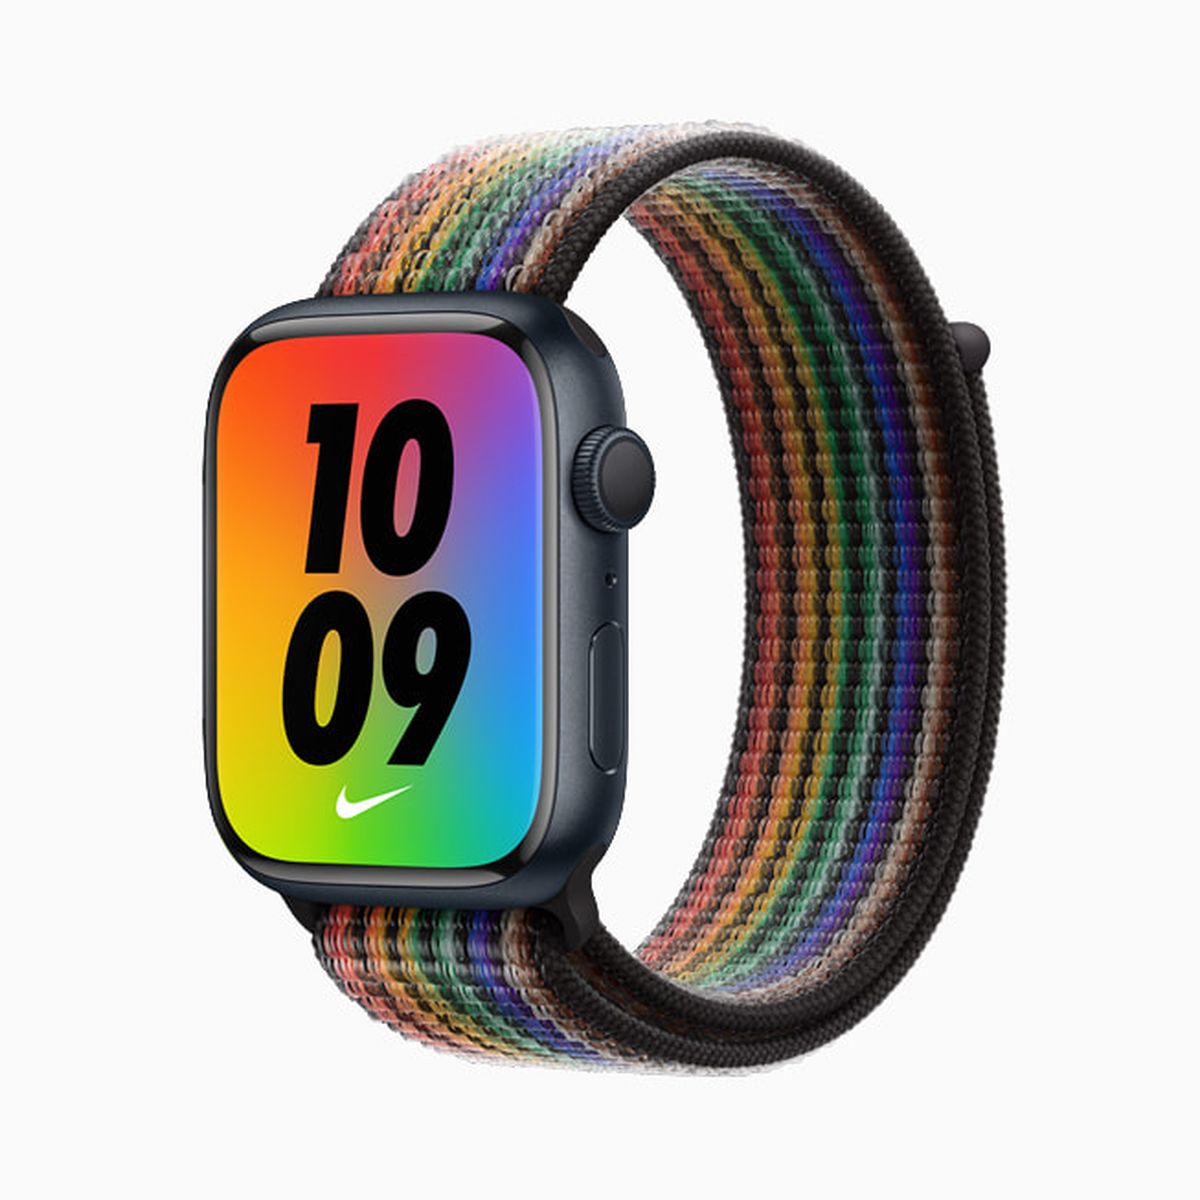 apple pride 03 - Apple mostra i nuovi cinturini per Apple Watch Pride Edition